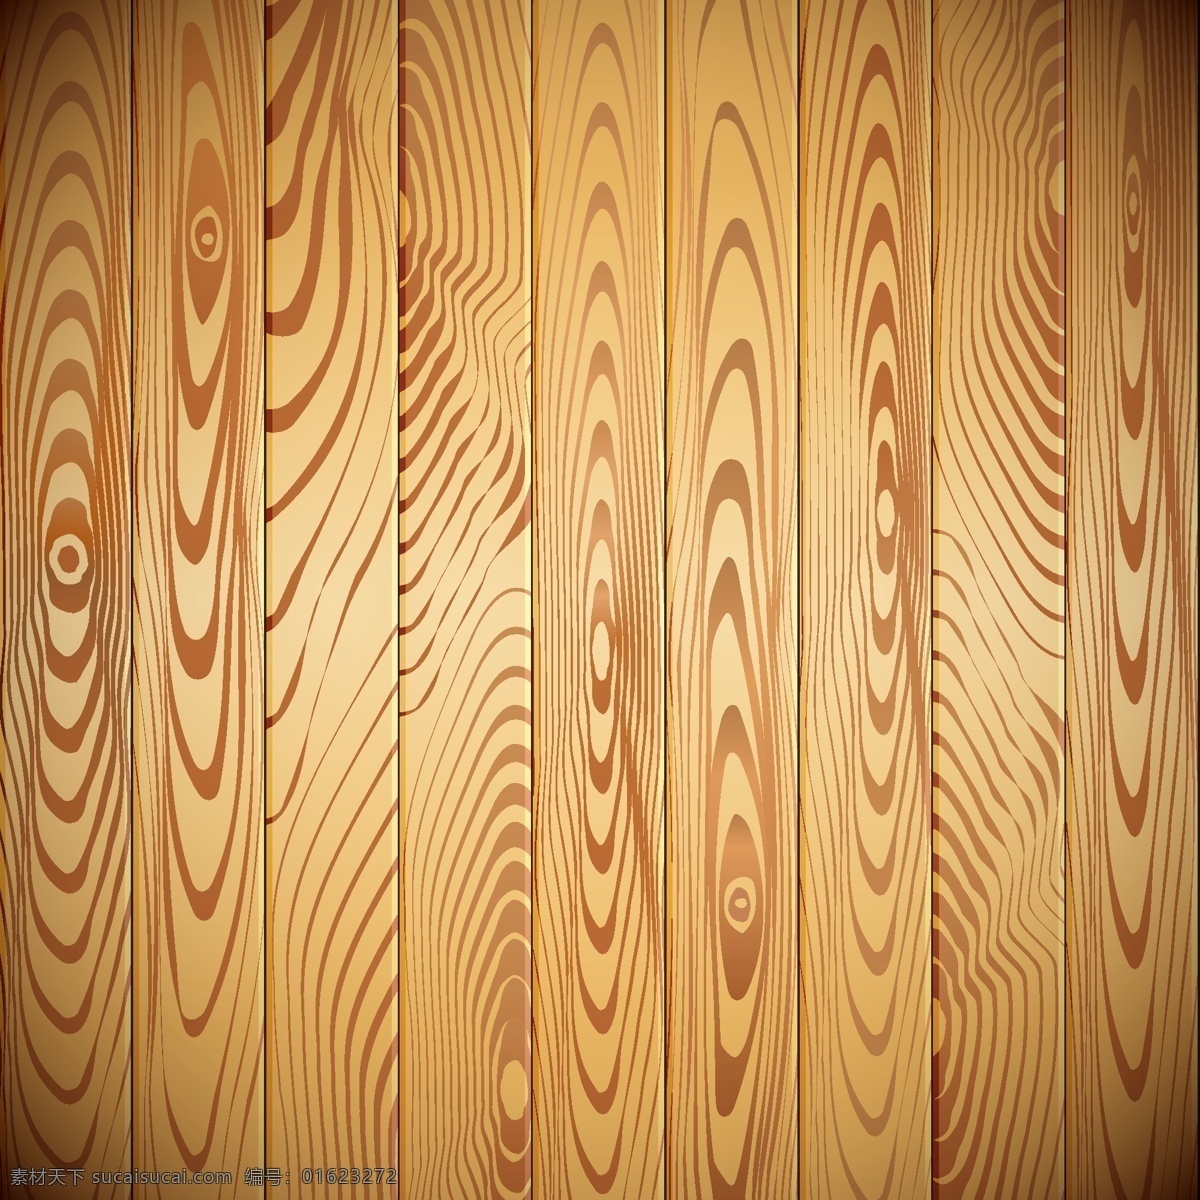 木背景 的背景下 木材 纹理 木材纹理 木纹背景 背景 木 纹理背景 背景纹理 硬木木板 棕色